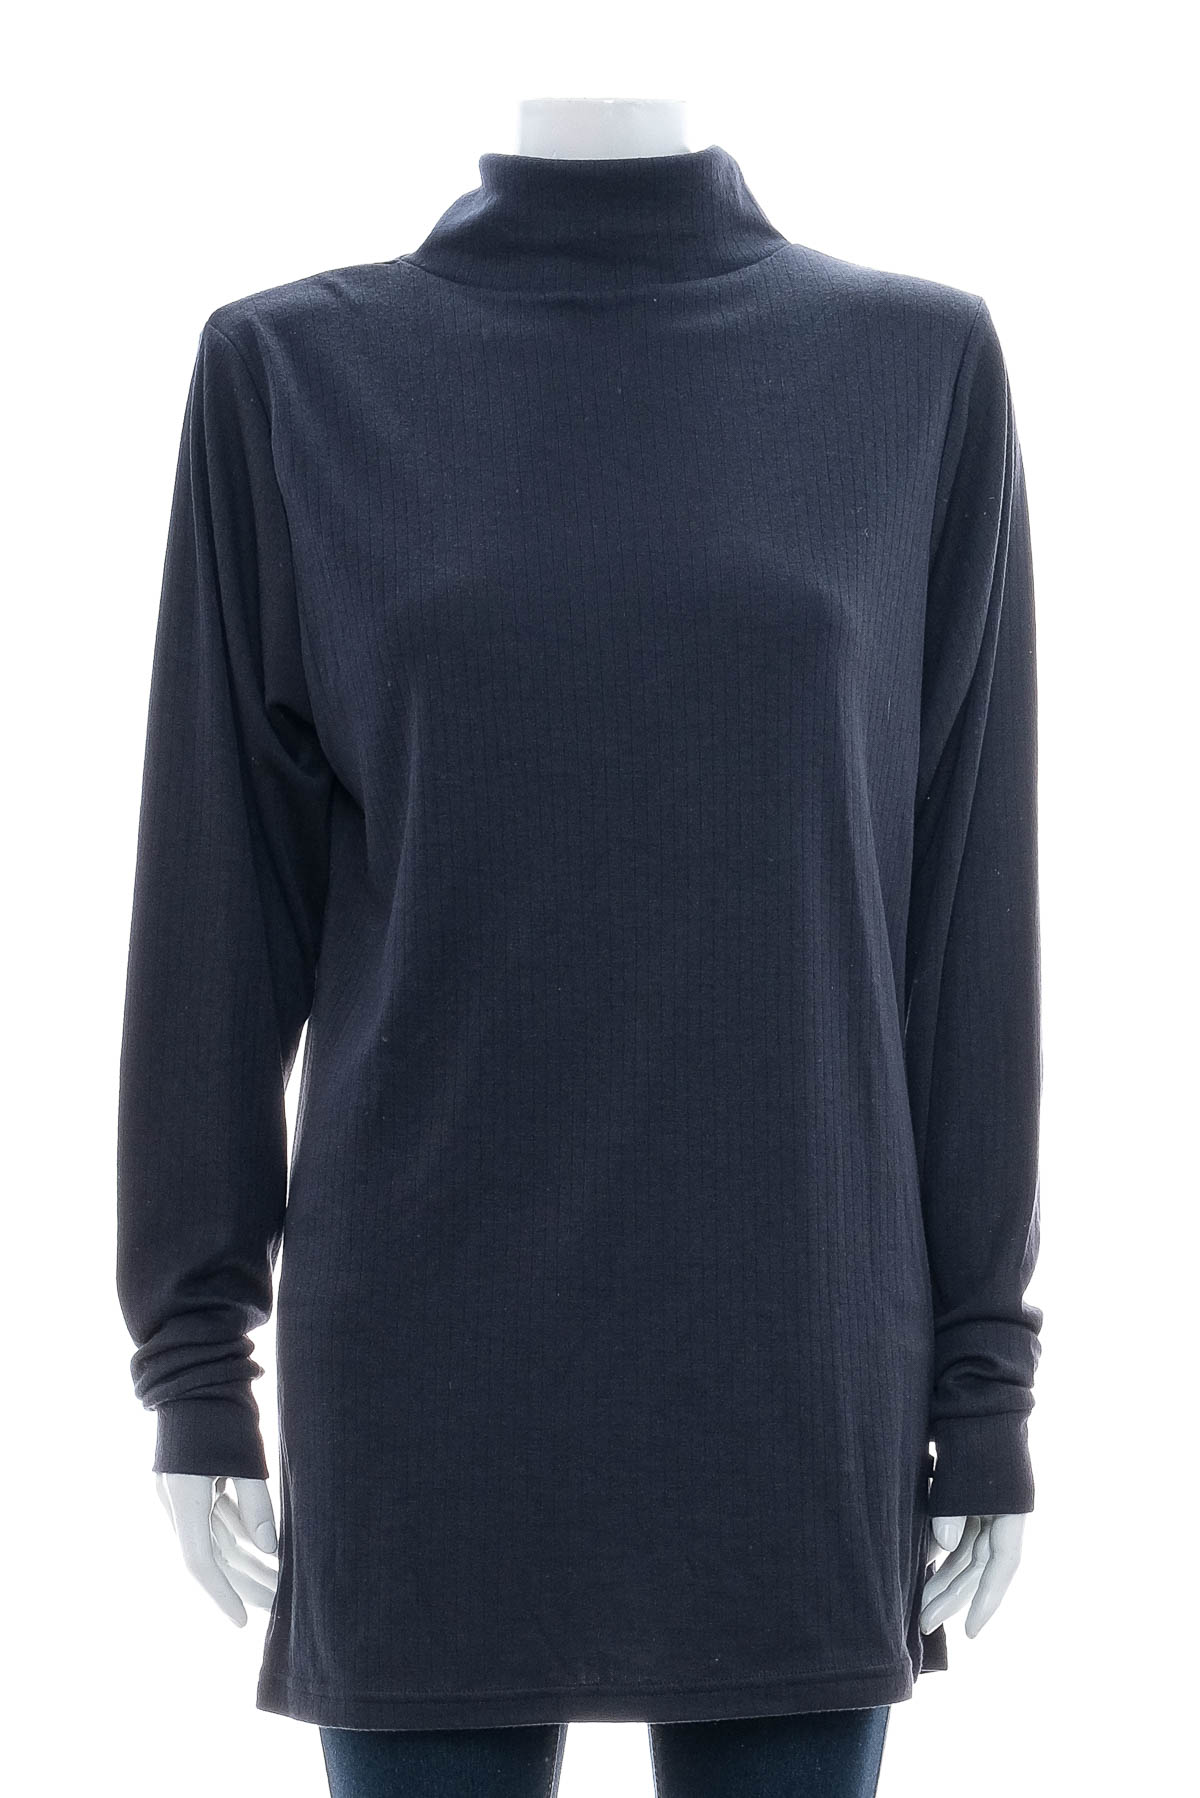 Women's sweater - Nielsson - 0